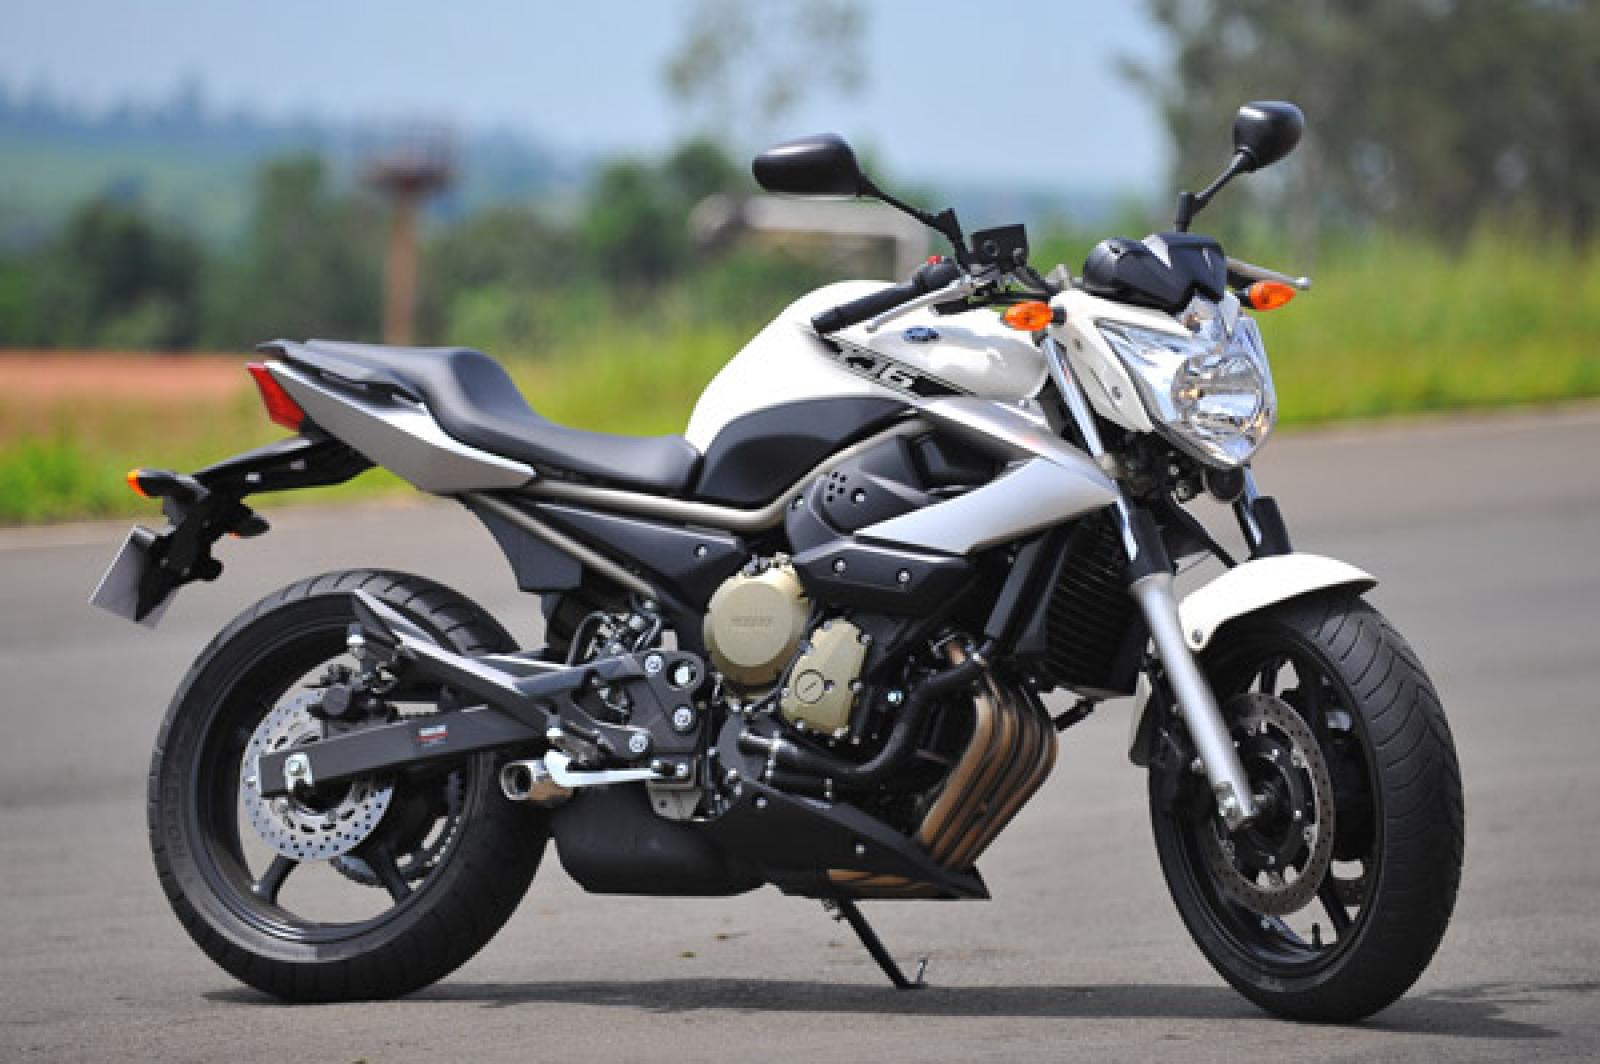 Yamaha Xj6 | Bike, Vehicles, Motorcycle